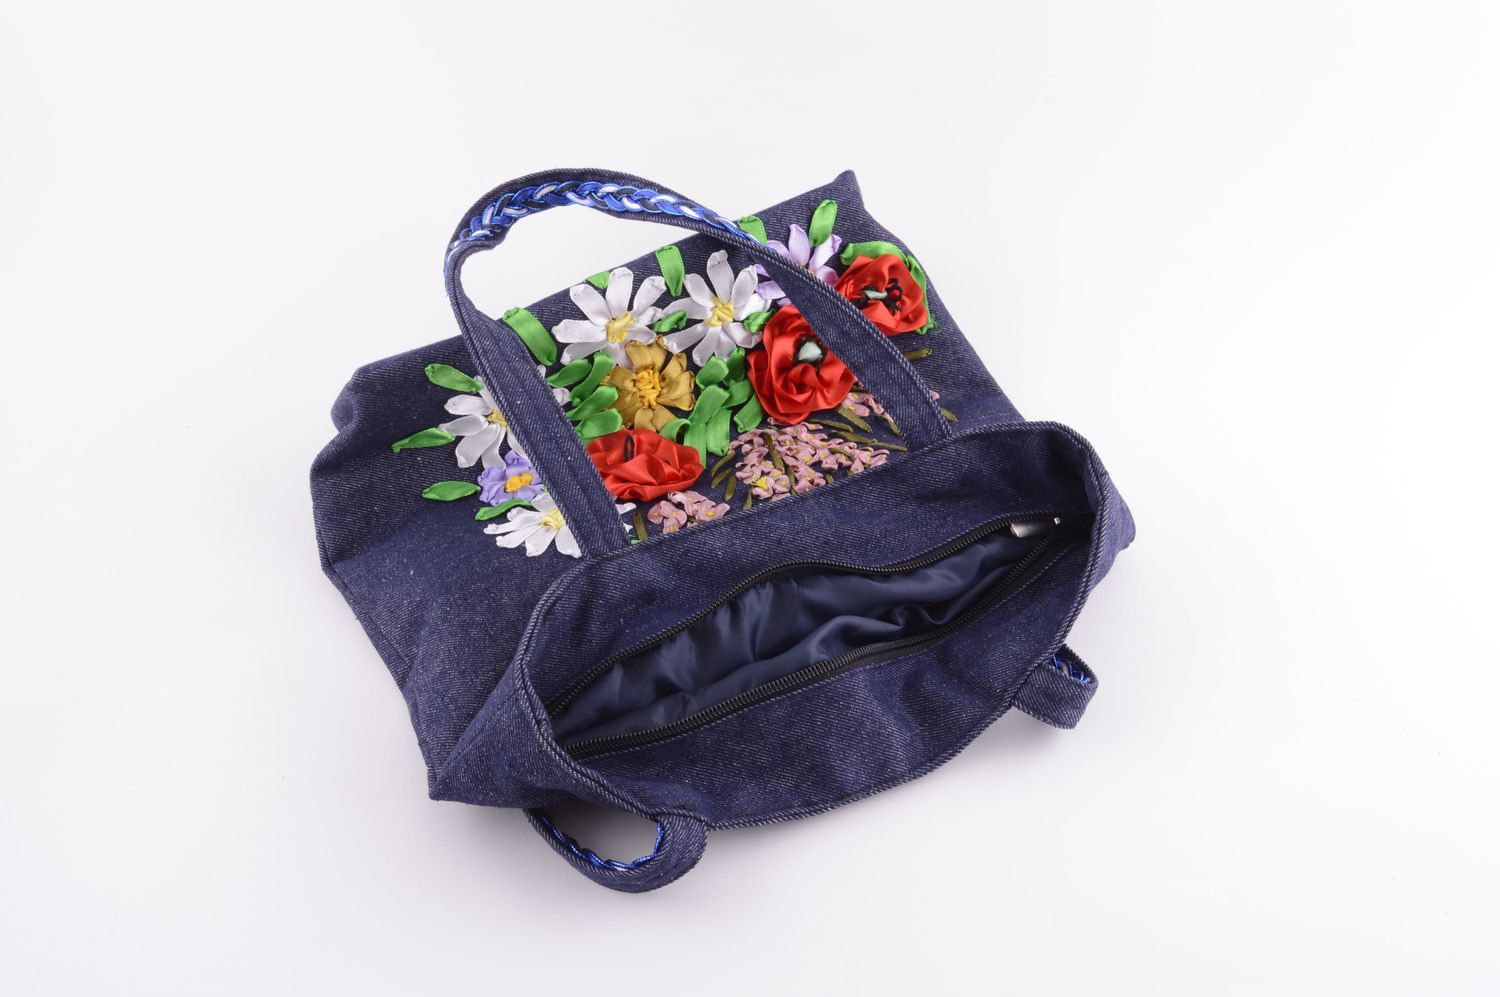 Сумка ручной работы джинсовая сумка вышитая лентами сумка на плечо синяя фото 4